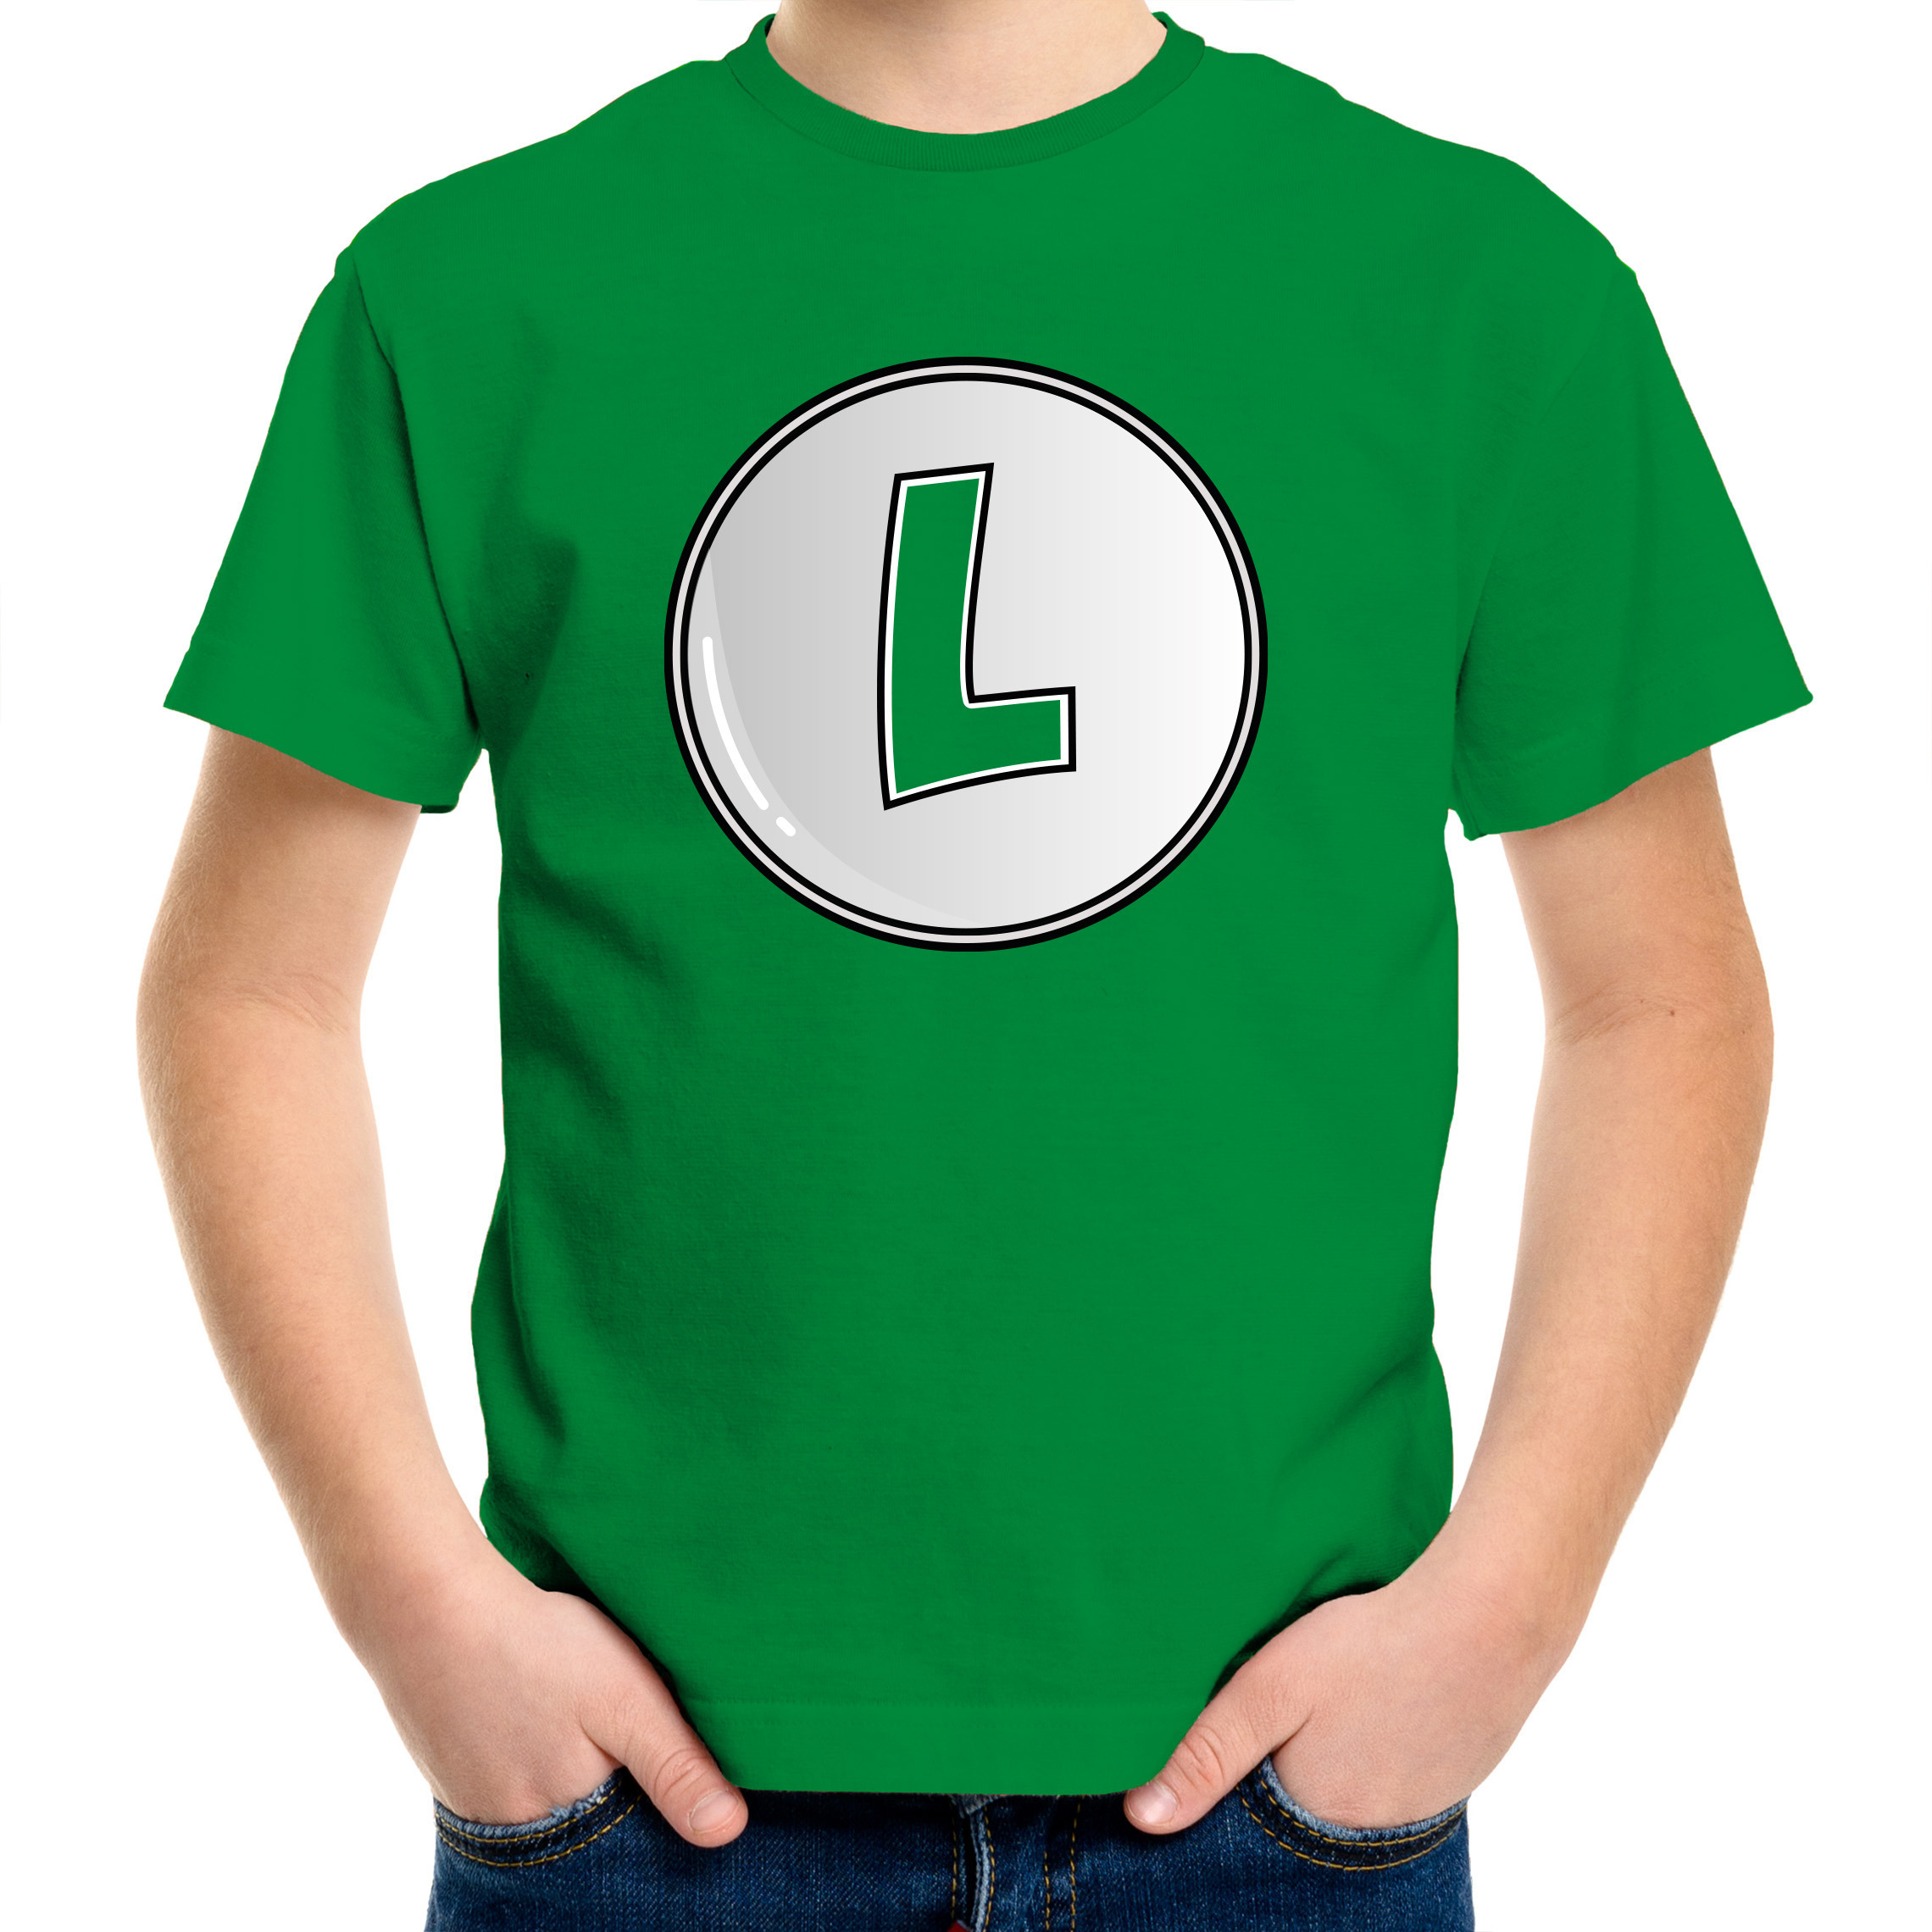 Afbeelding van Game verkleed t-shirt voor kinderen - loodgieter Luigi - groen - carnaval/themafeest kostuum